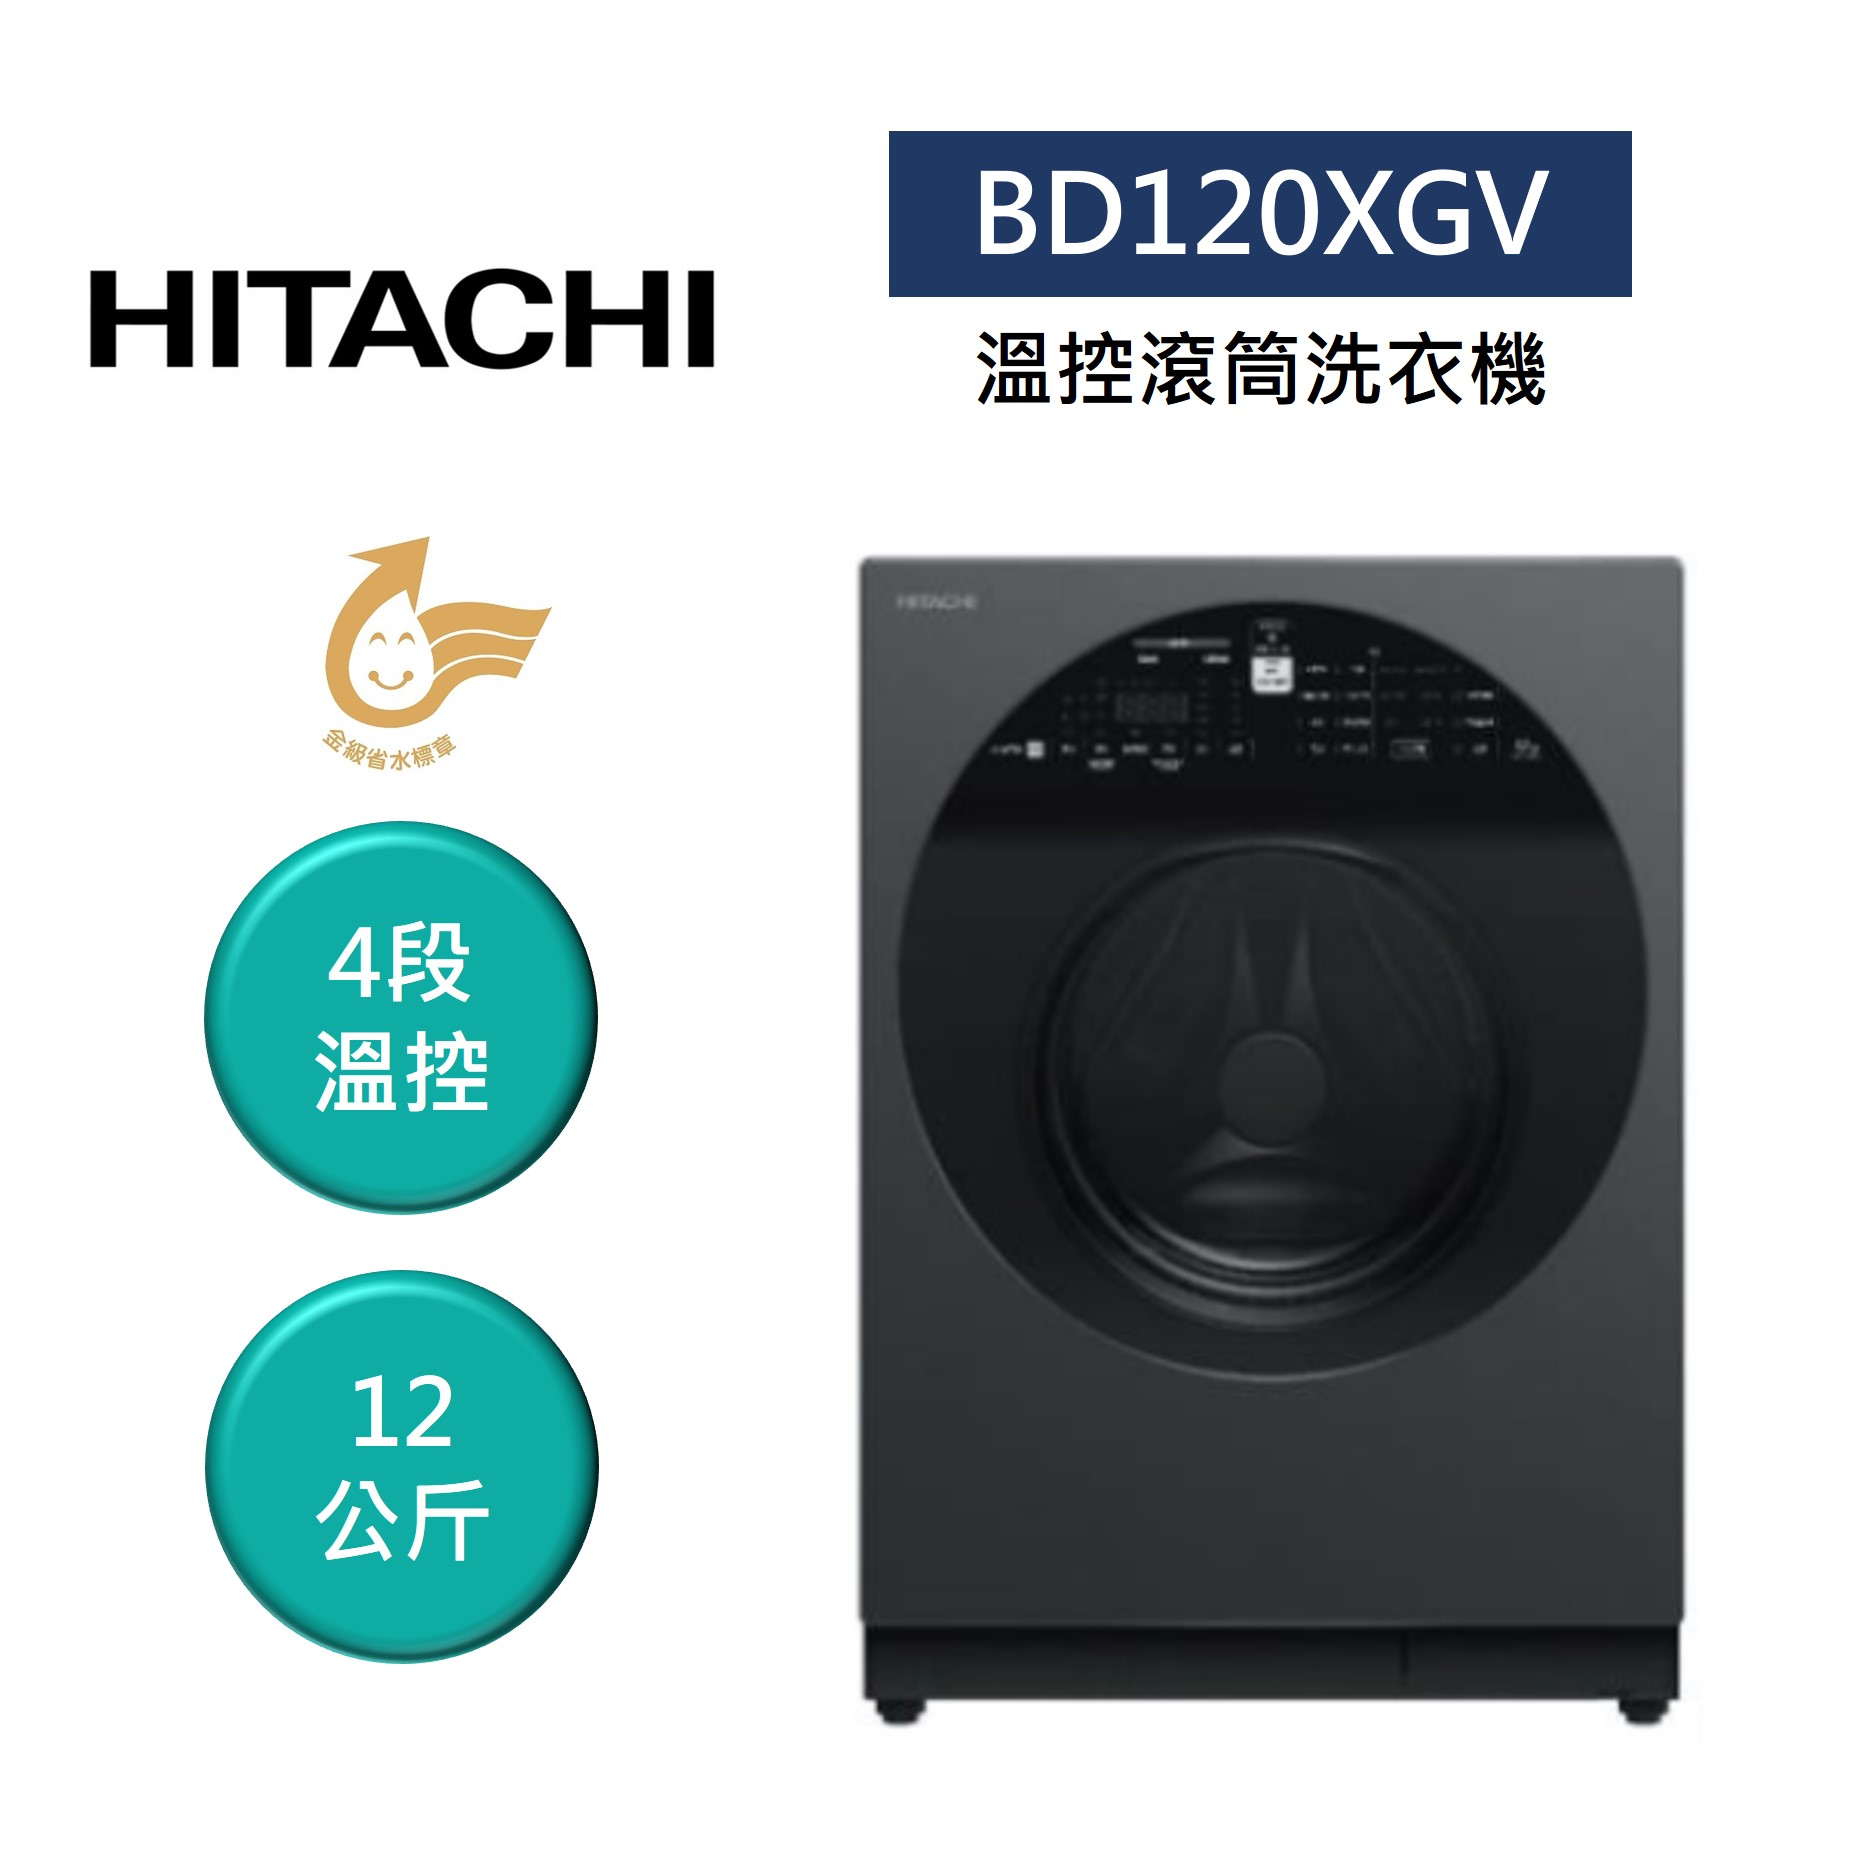 【領券再97折+4%點數回饋】HITACHI 日立 BD120XGV 12公斤 IOT 溫控滾筒洗衣機